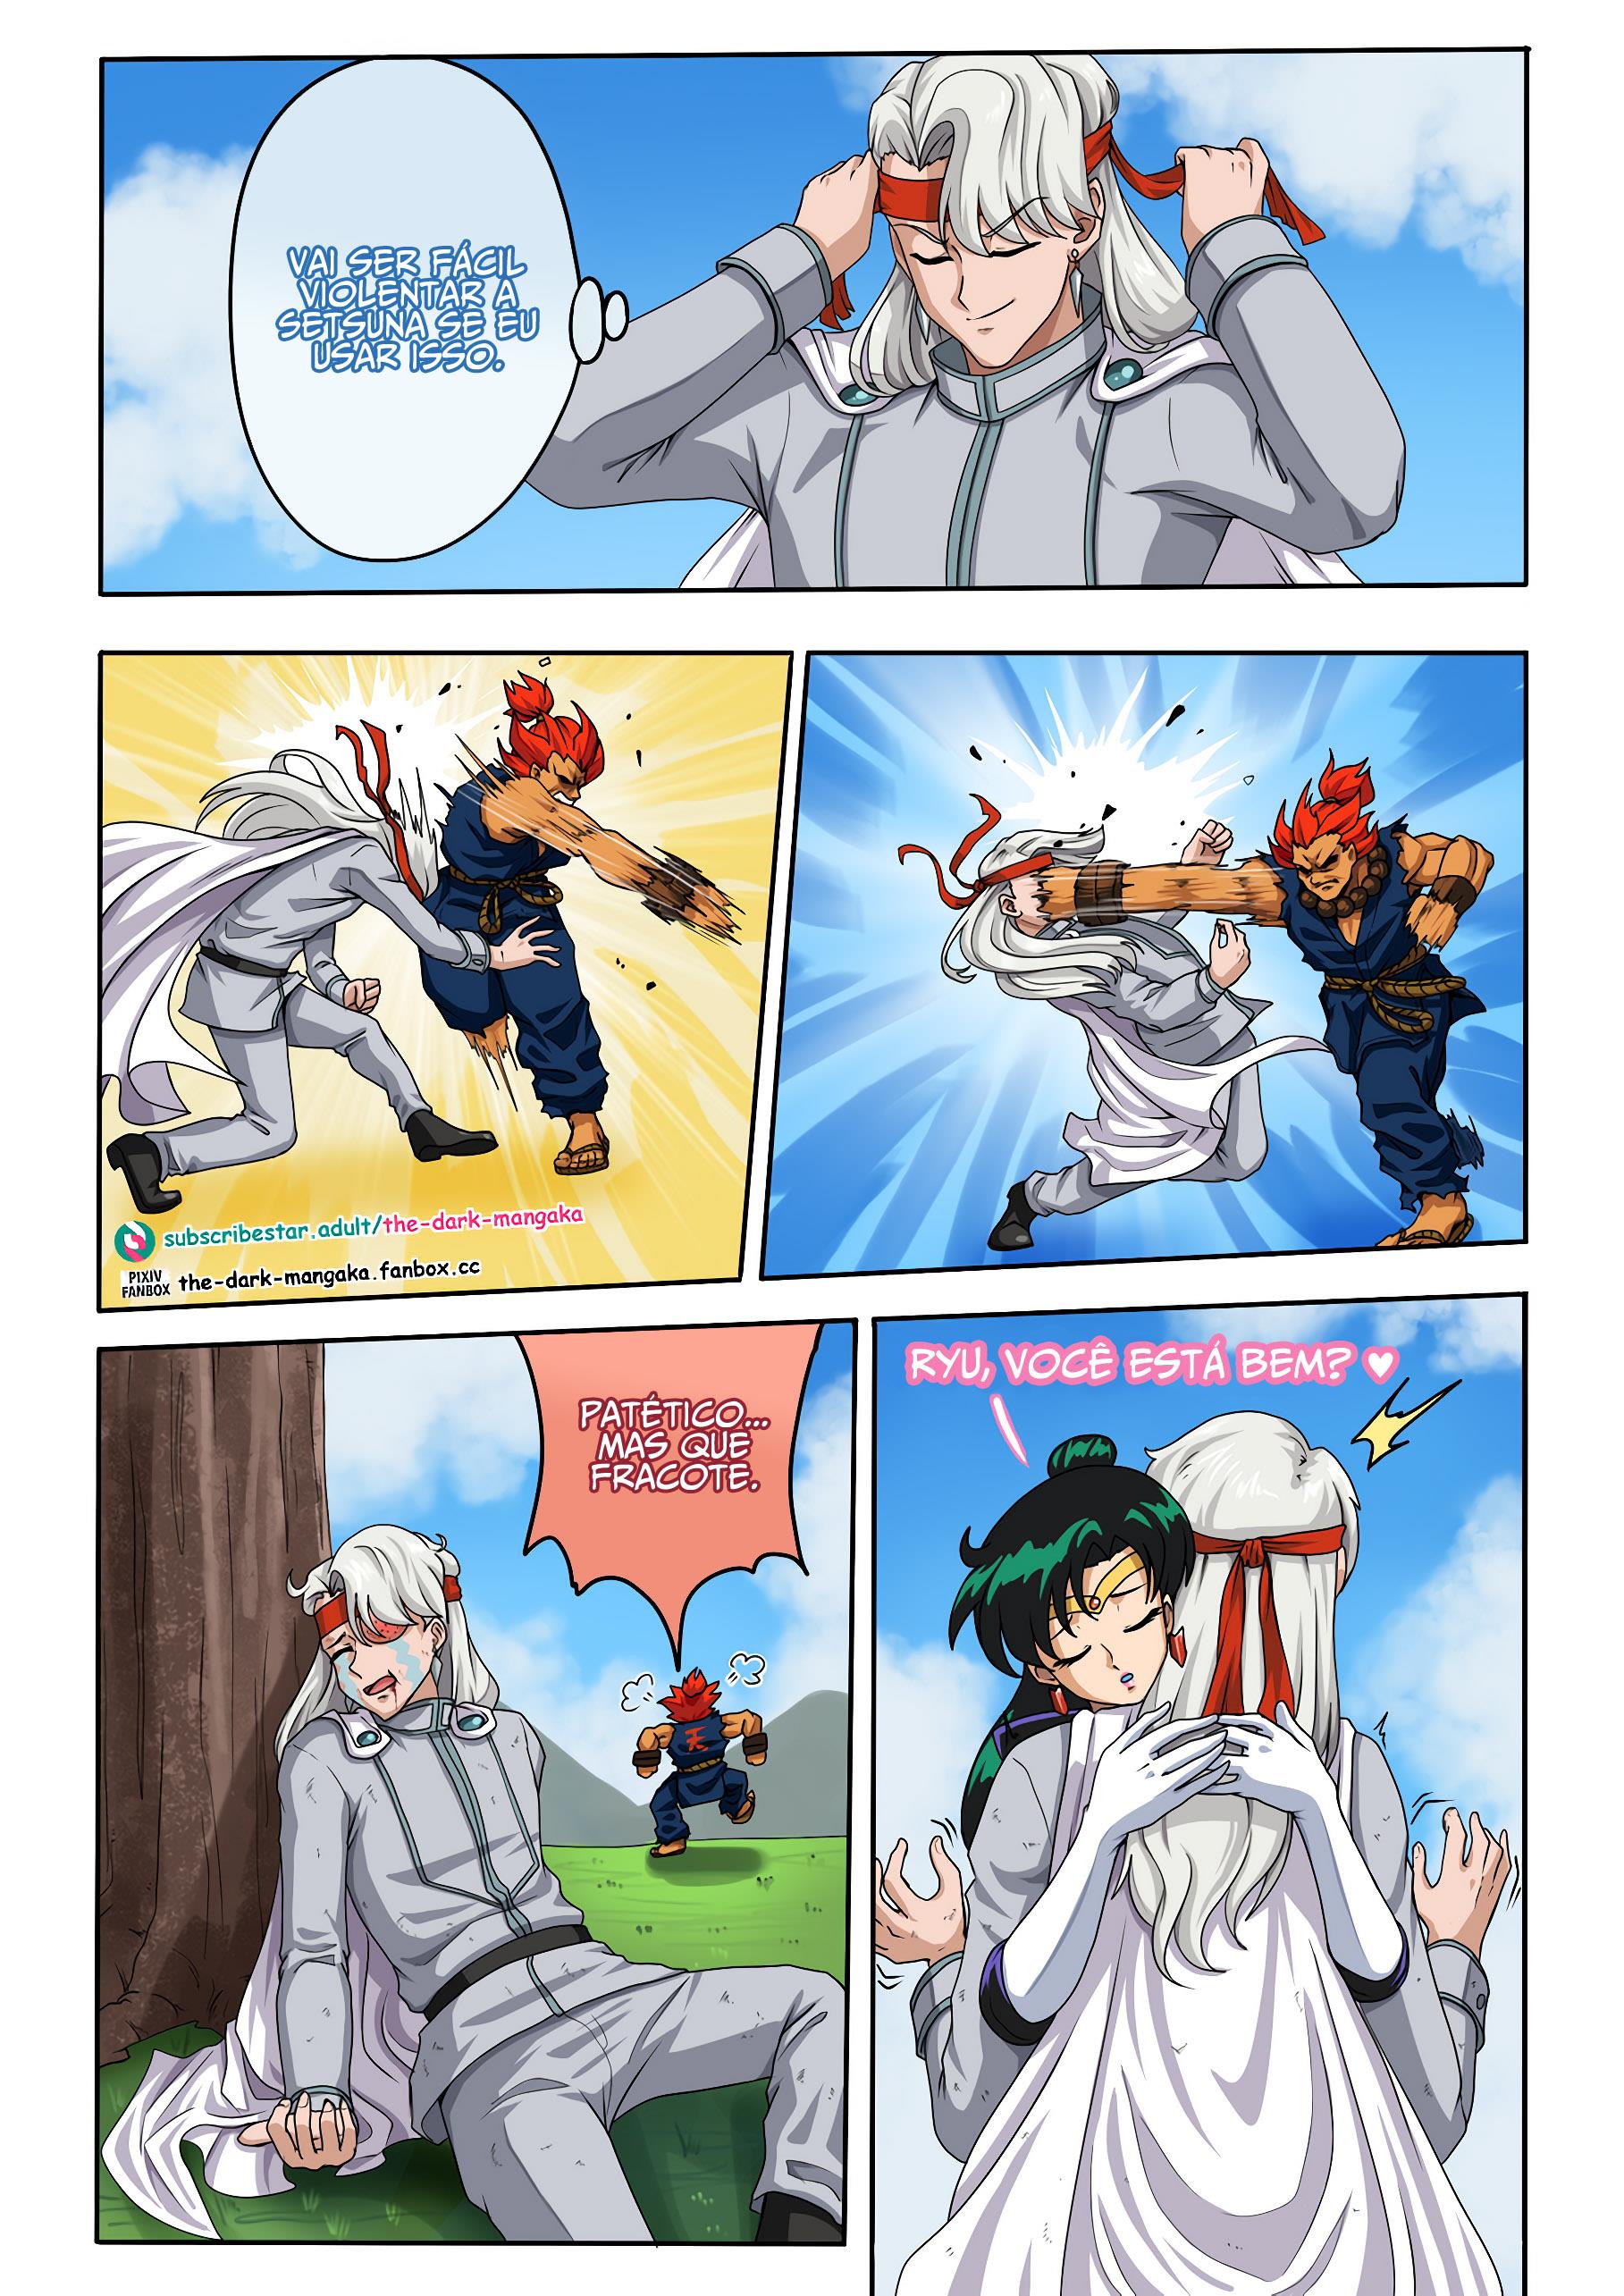 A bandana mágica de Ryu